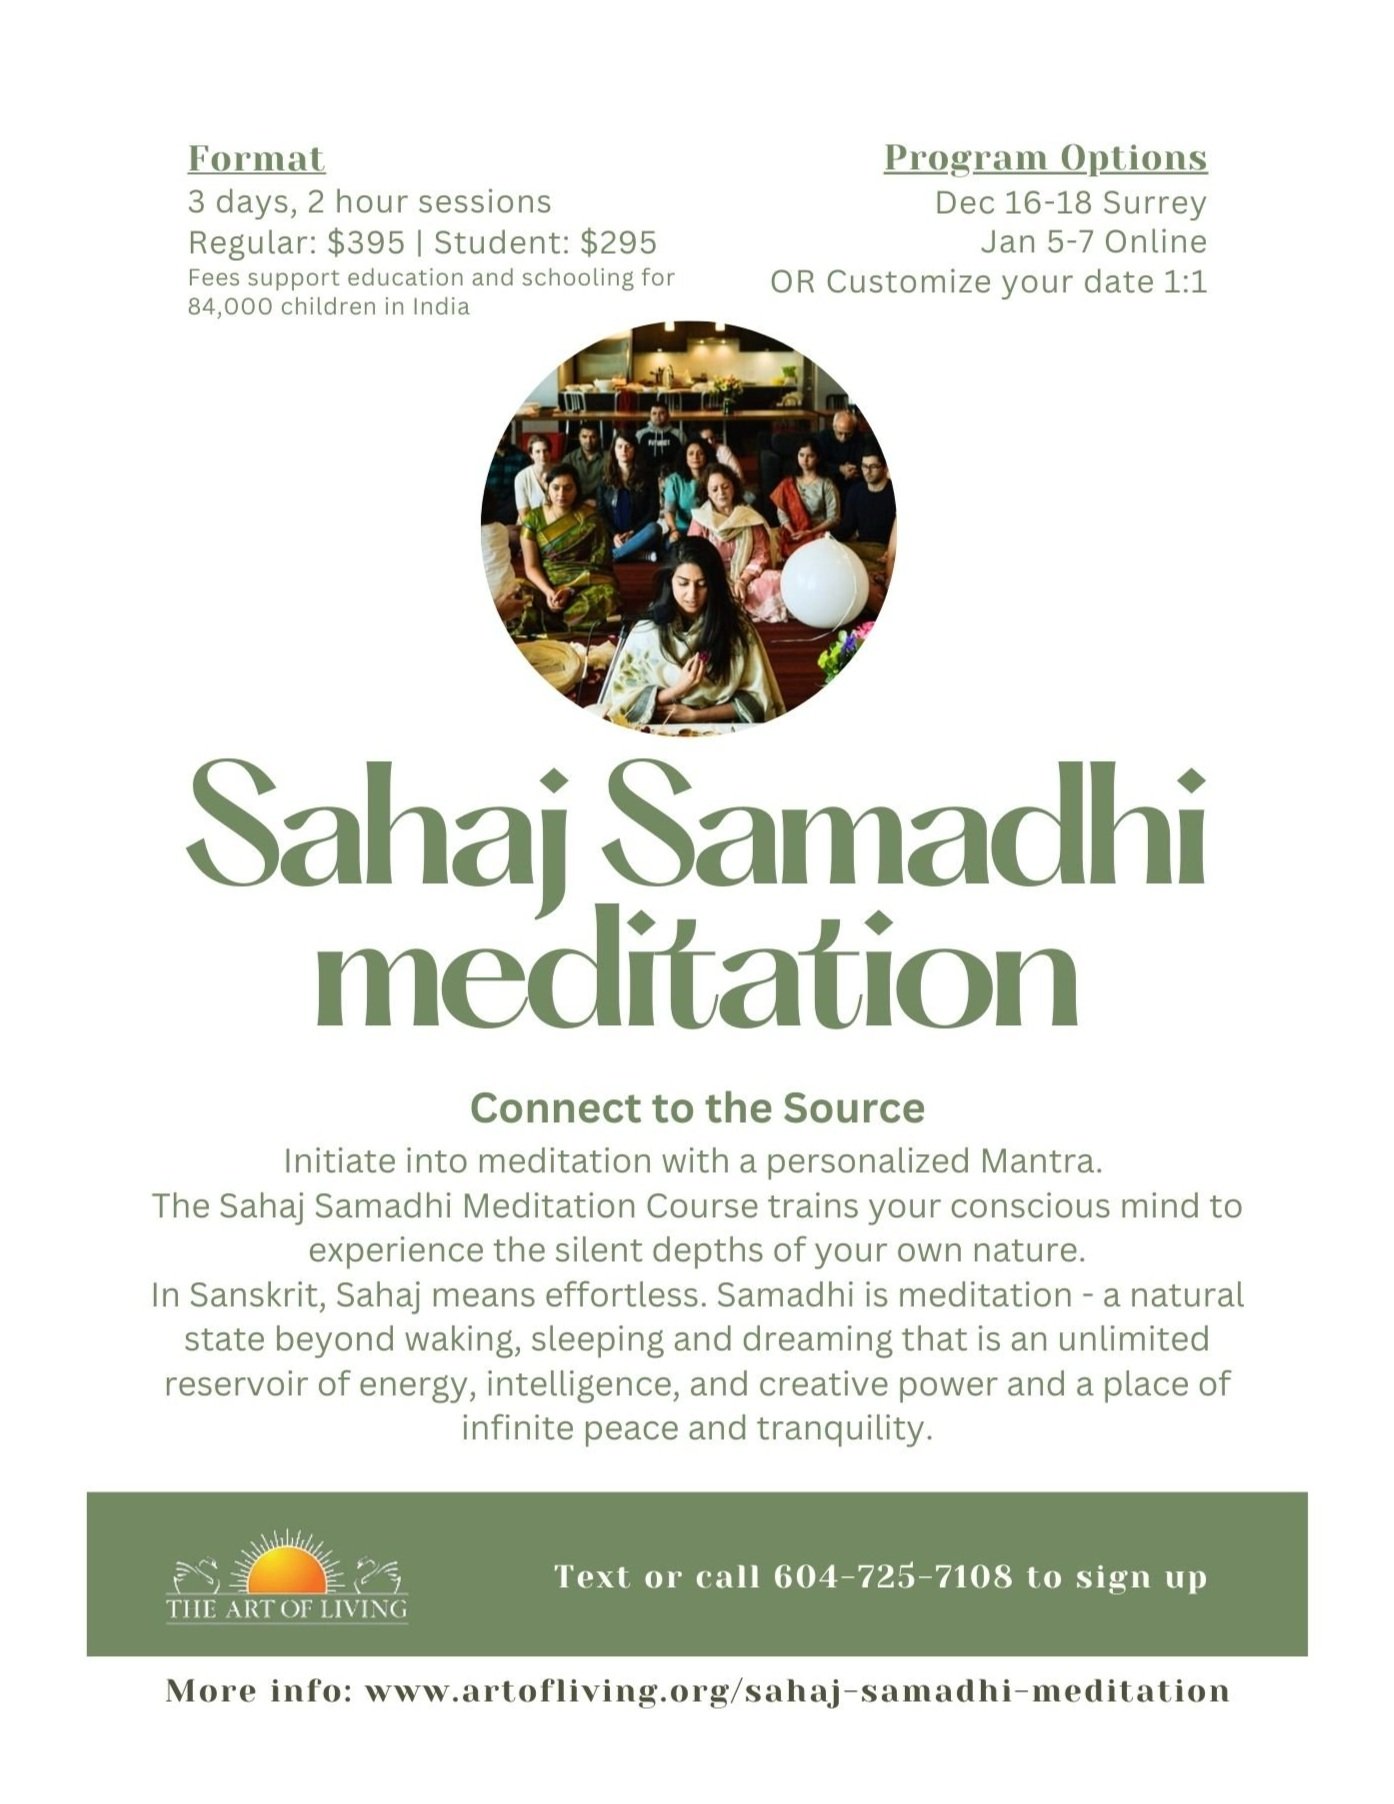 Sahaj+Samadhi+meditation.jpg